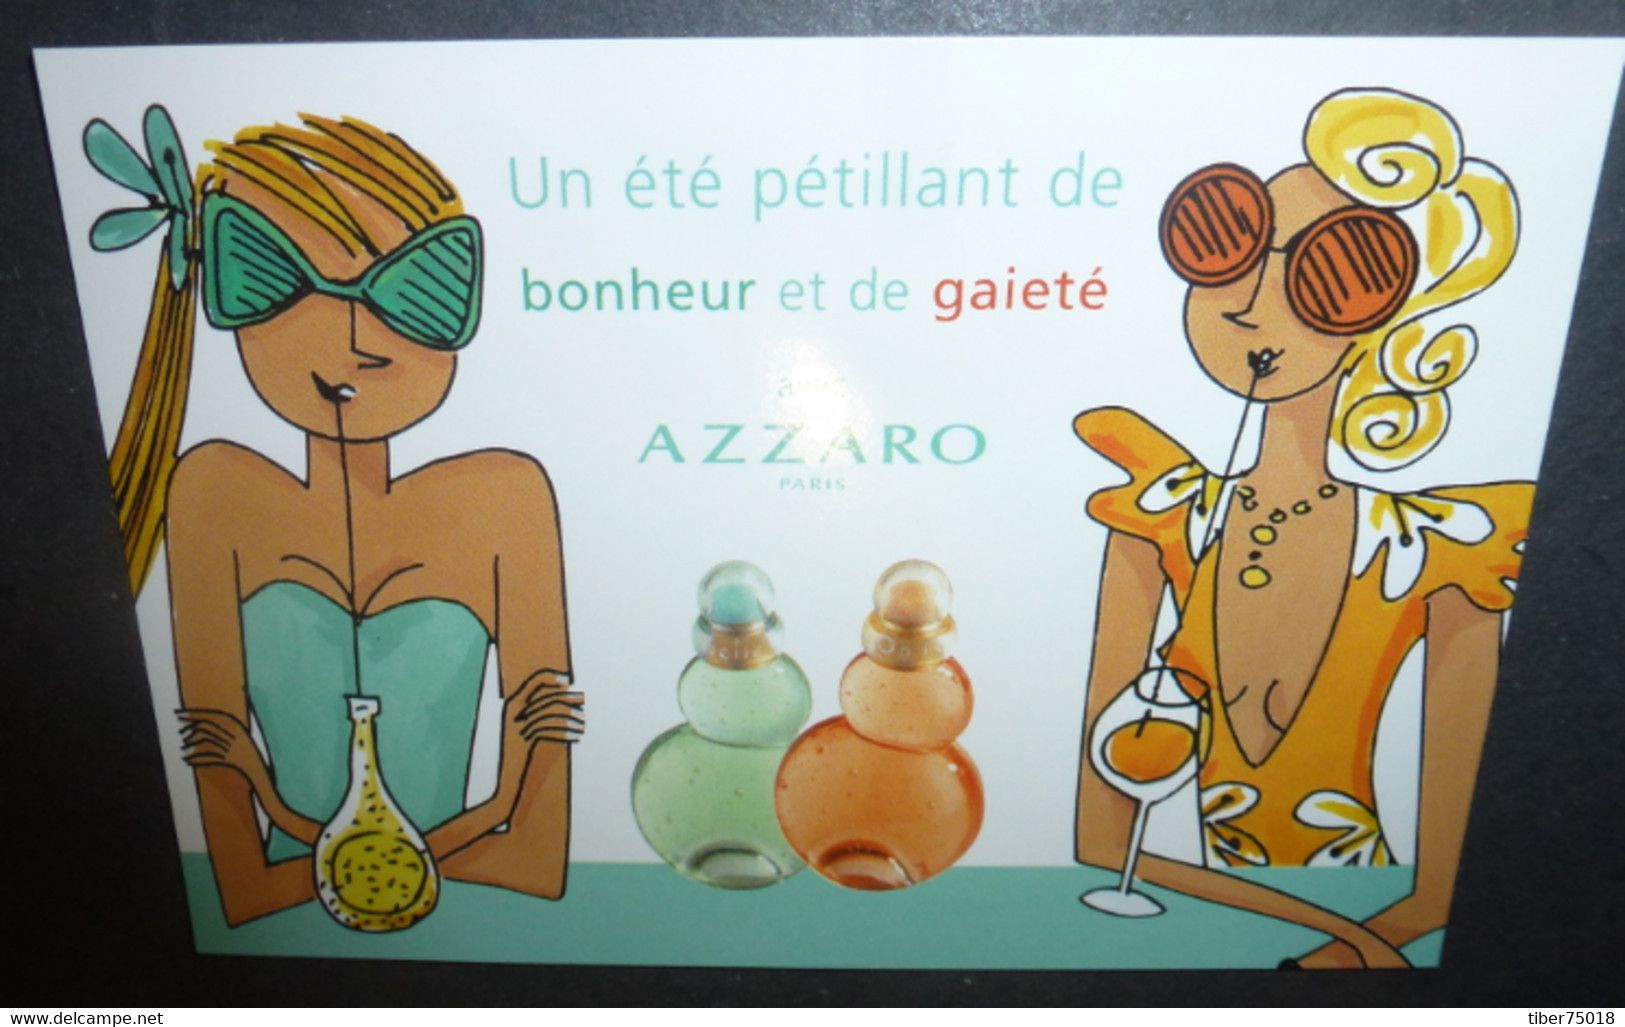 Carte Postale "Cart'Com" (2005) - Un été Pétillant De Bonheur Et De Gaieté Avec Azzaro Paris (parfum) - Publicité